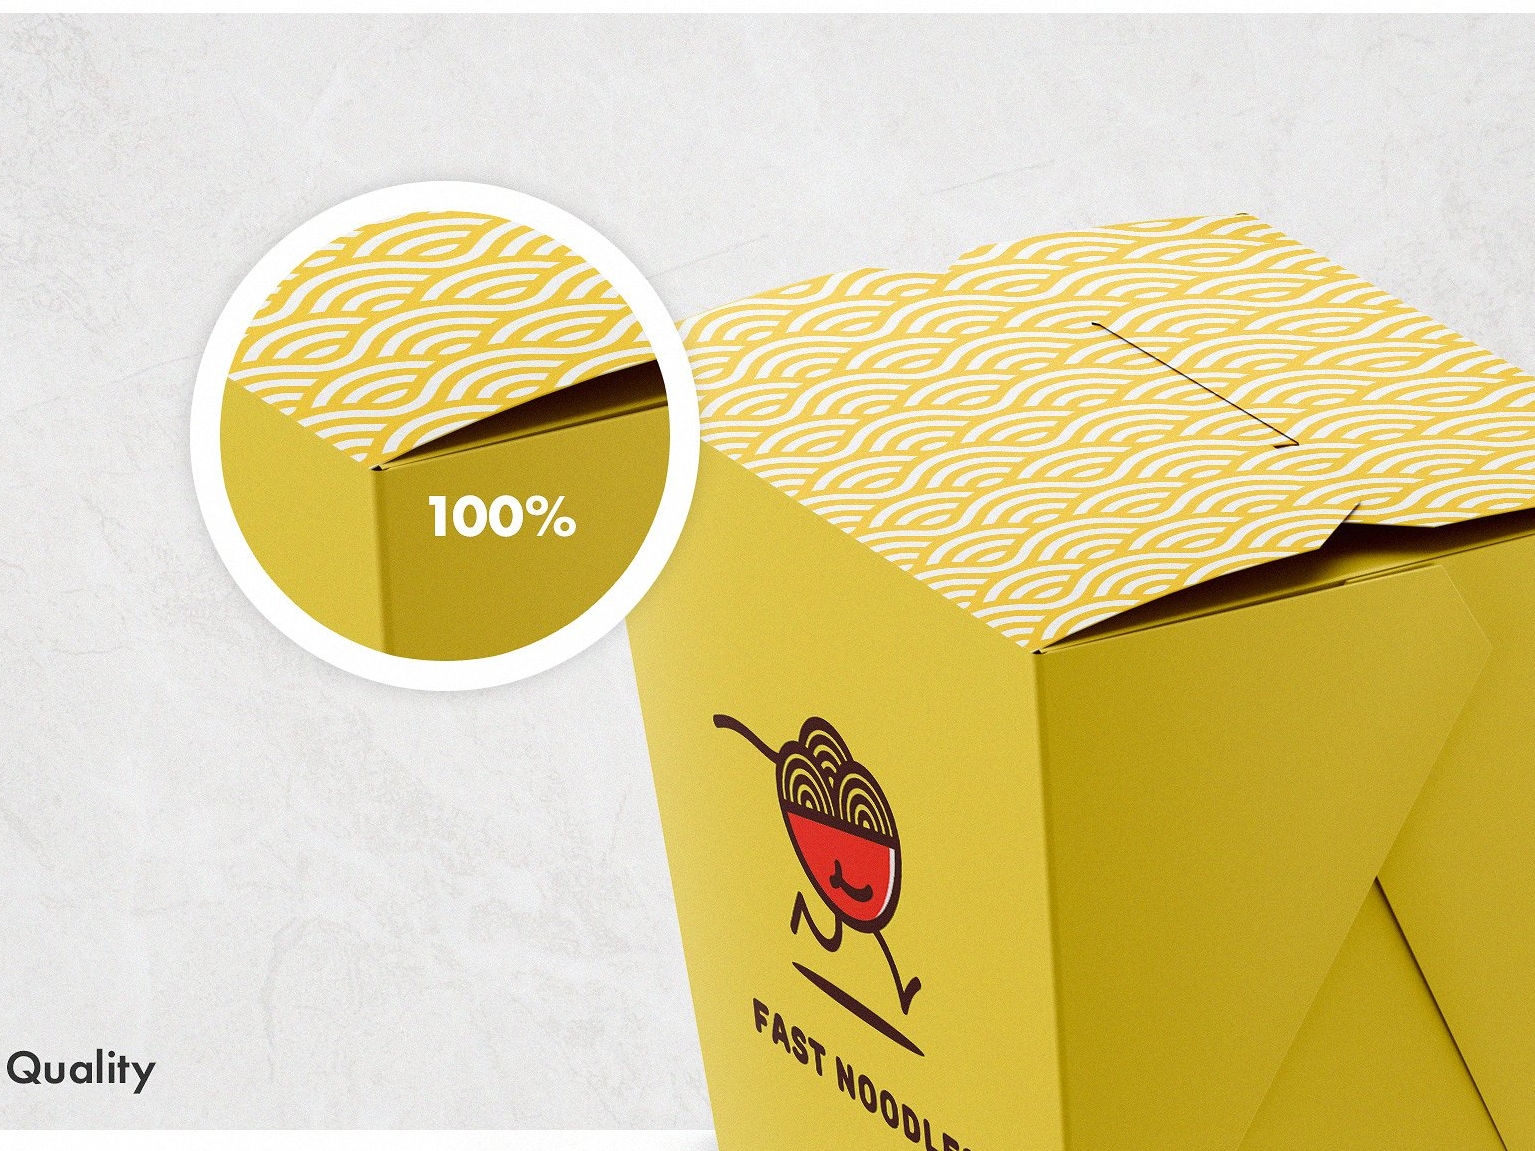 Download 48+ Noodle Packaging Mockup PNG - Free PSD Mockups Smart ...